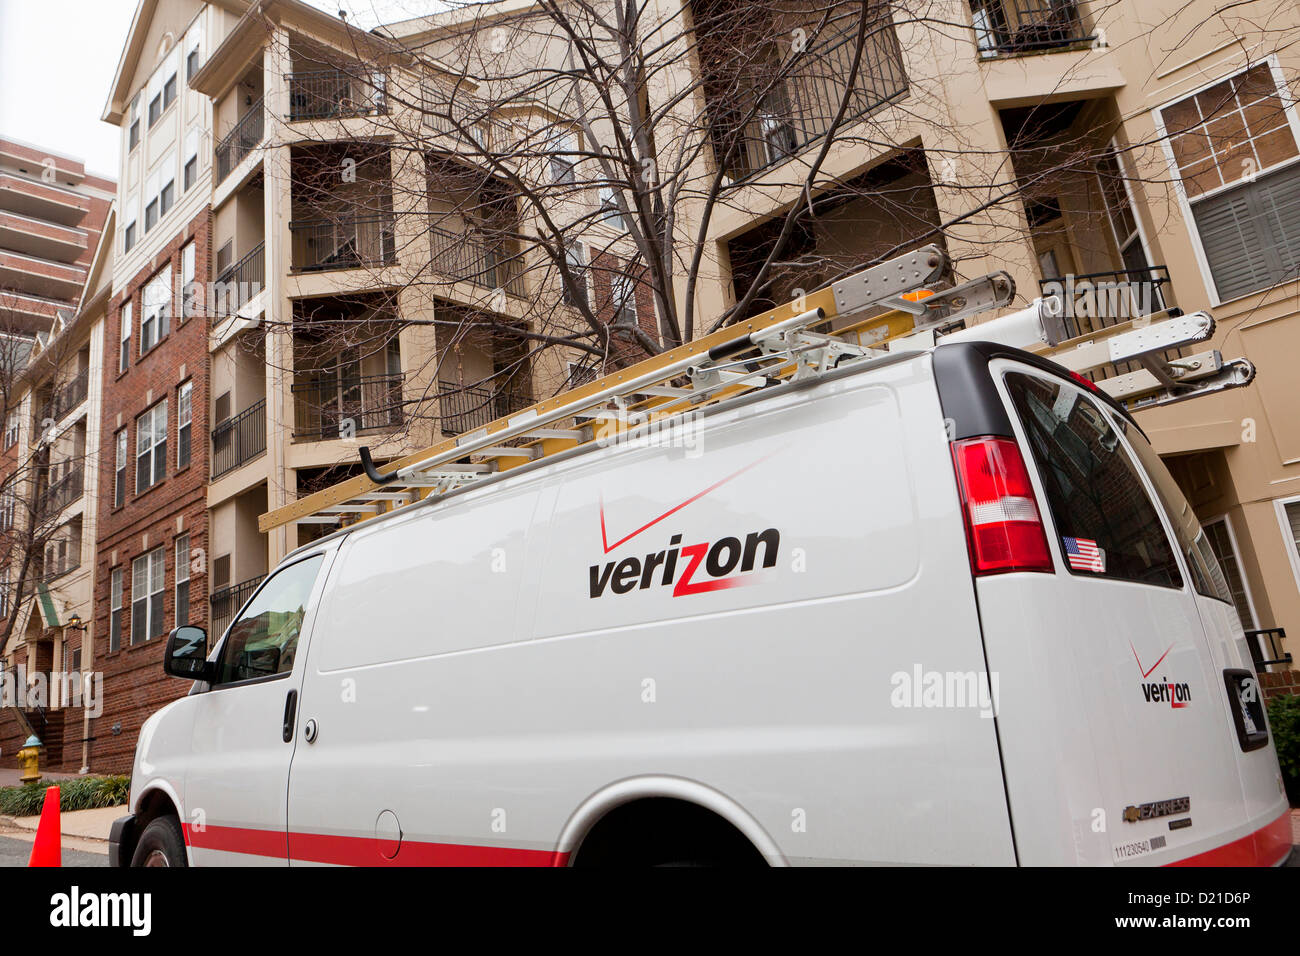 Service Verizon van en face de l'appartement immeuble Banque D'Images